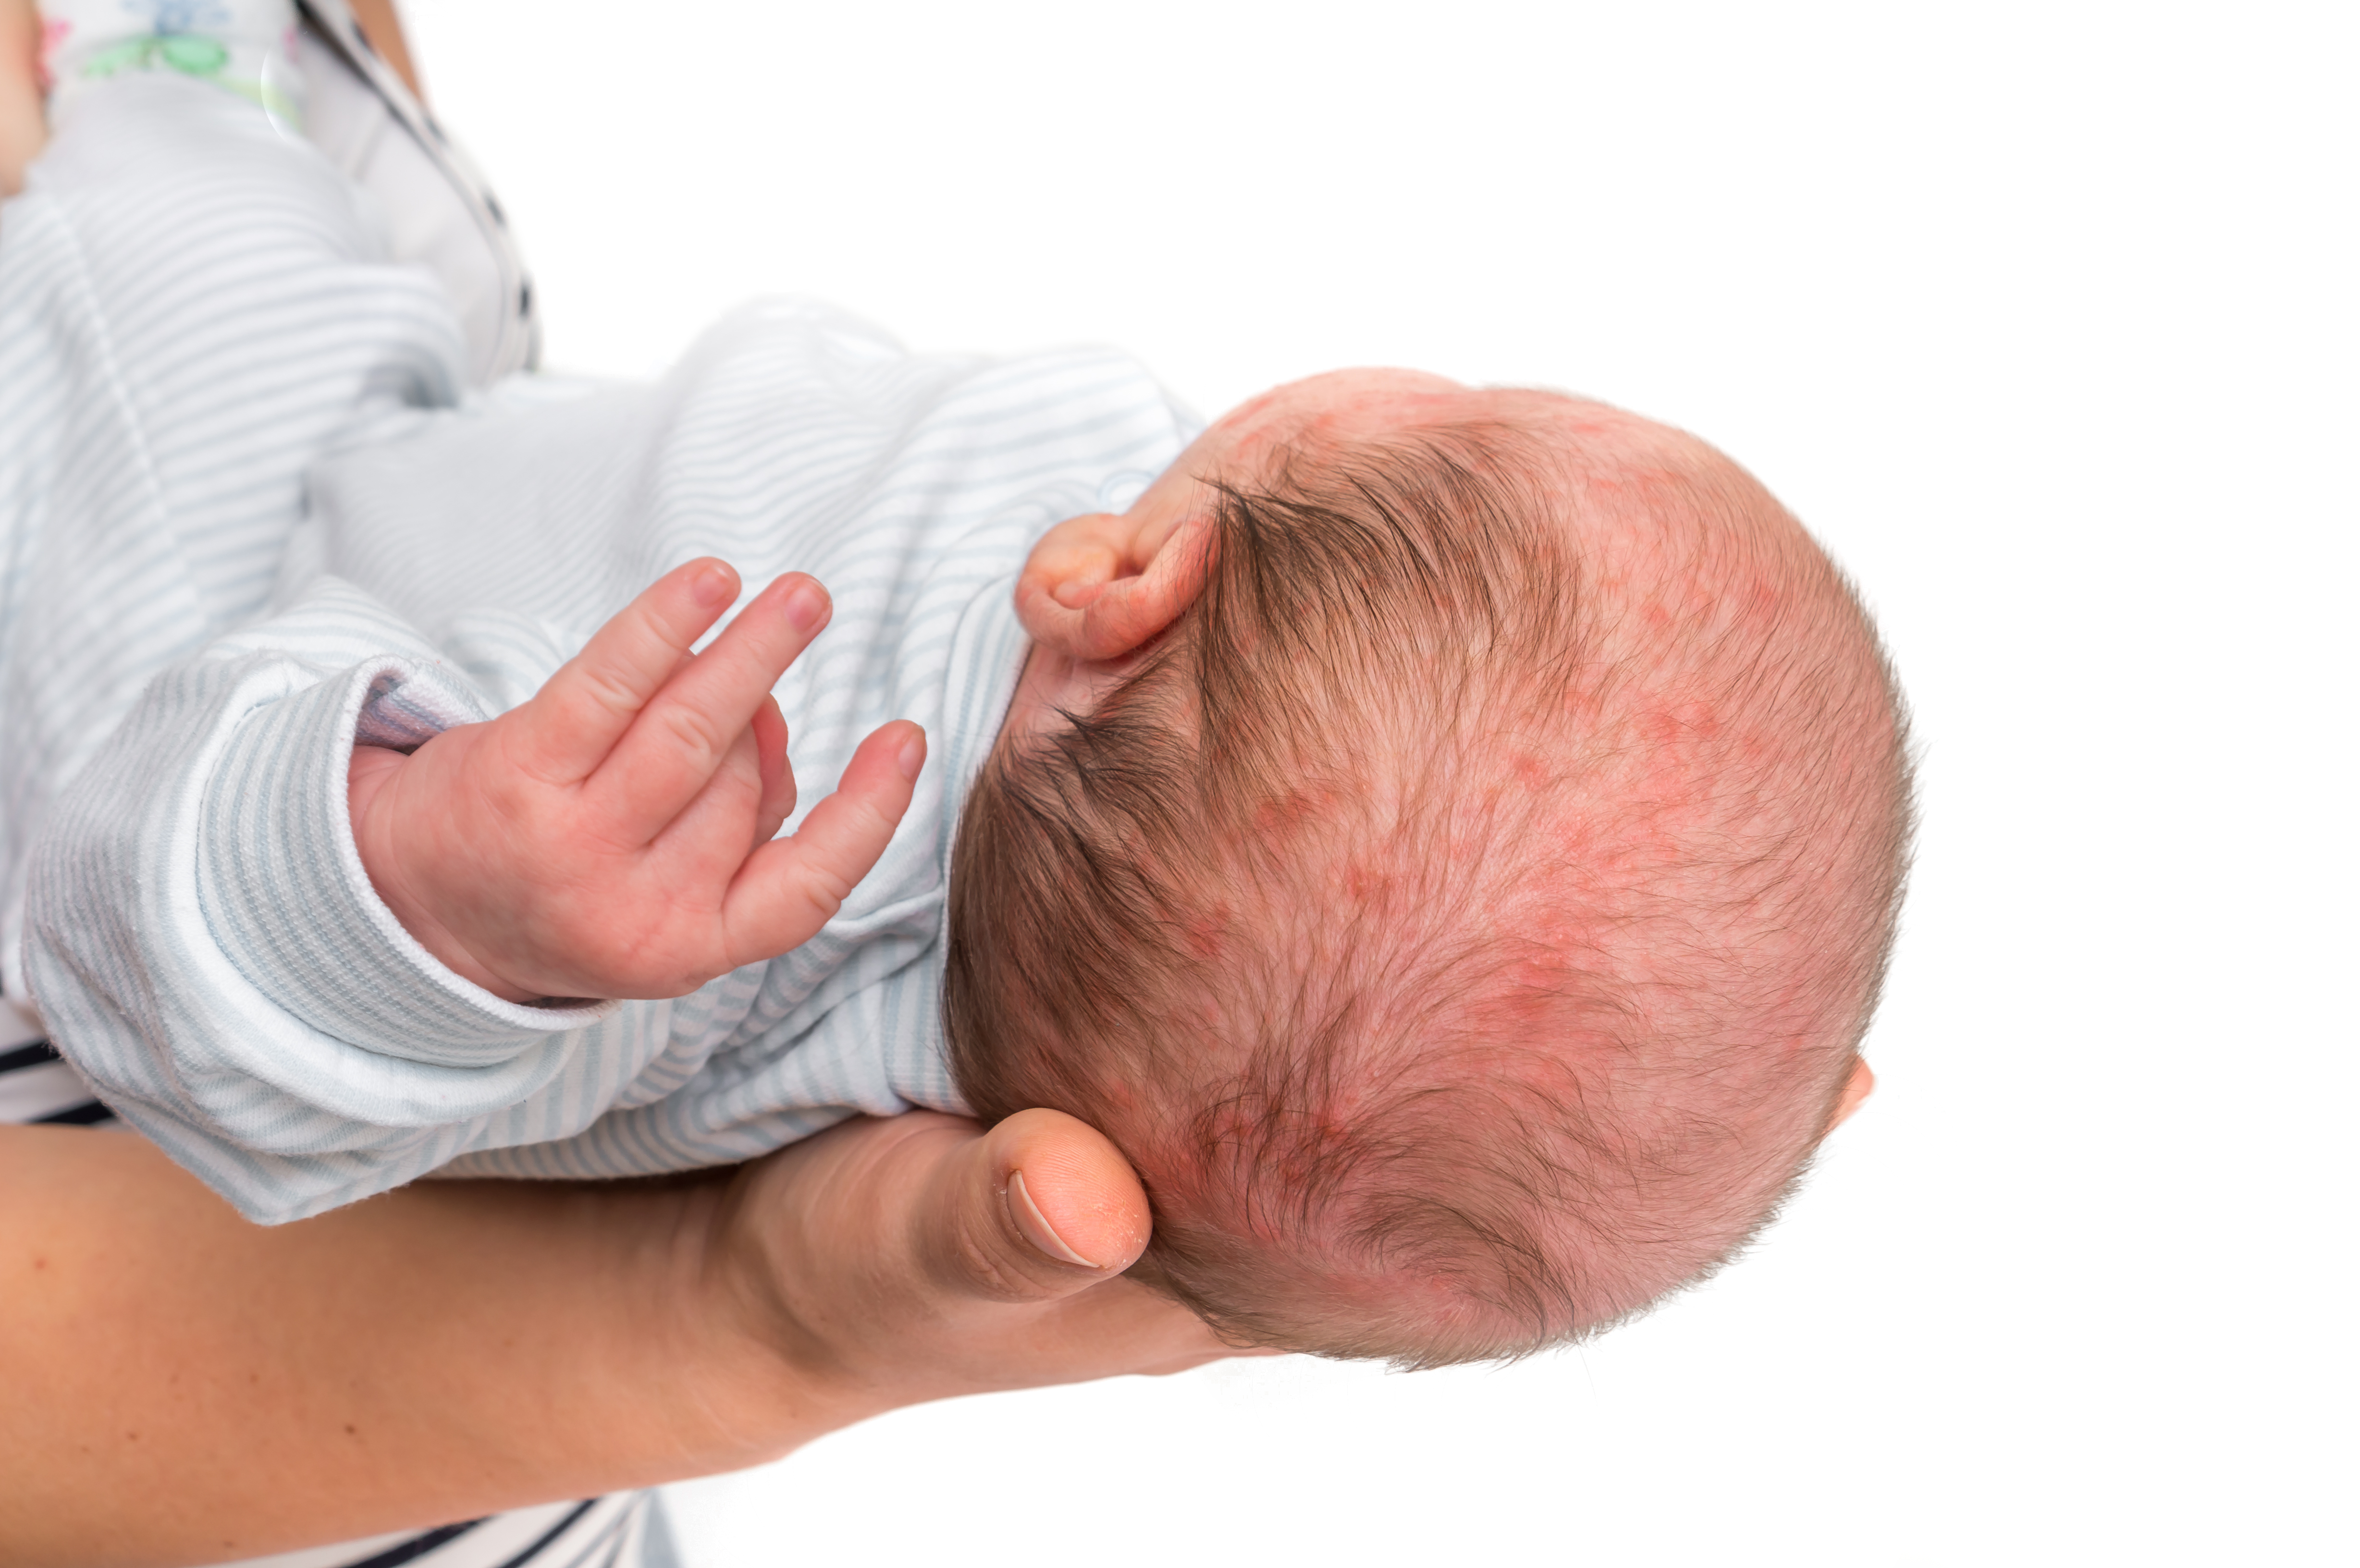 Cabeza de recién nacido con acné neonatal